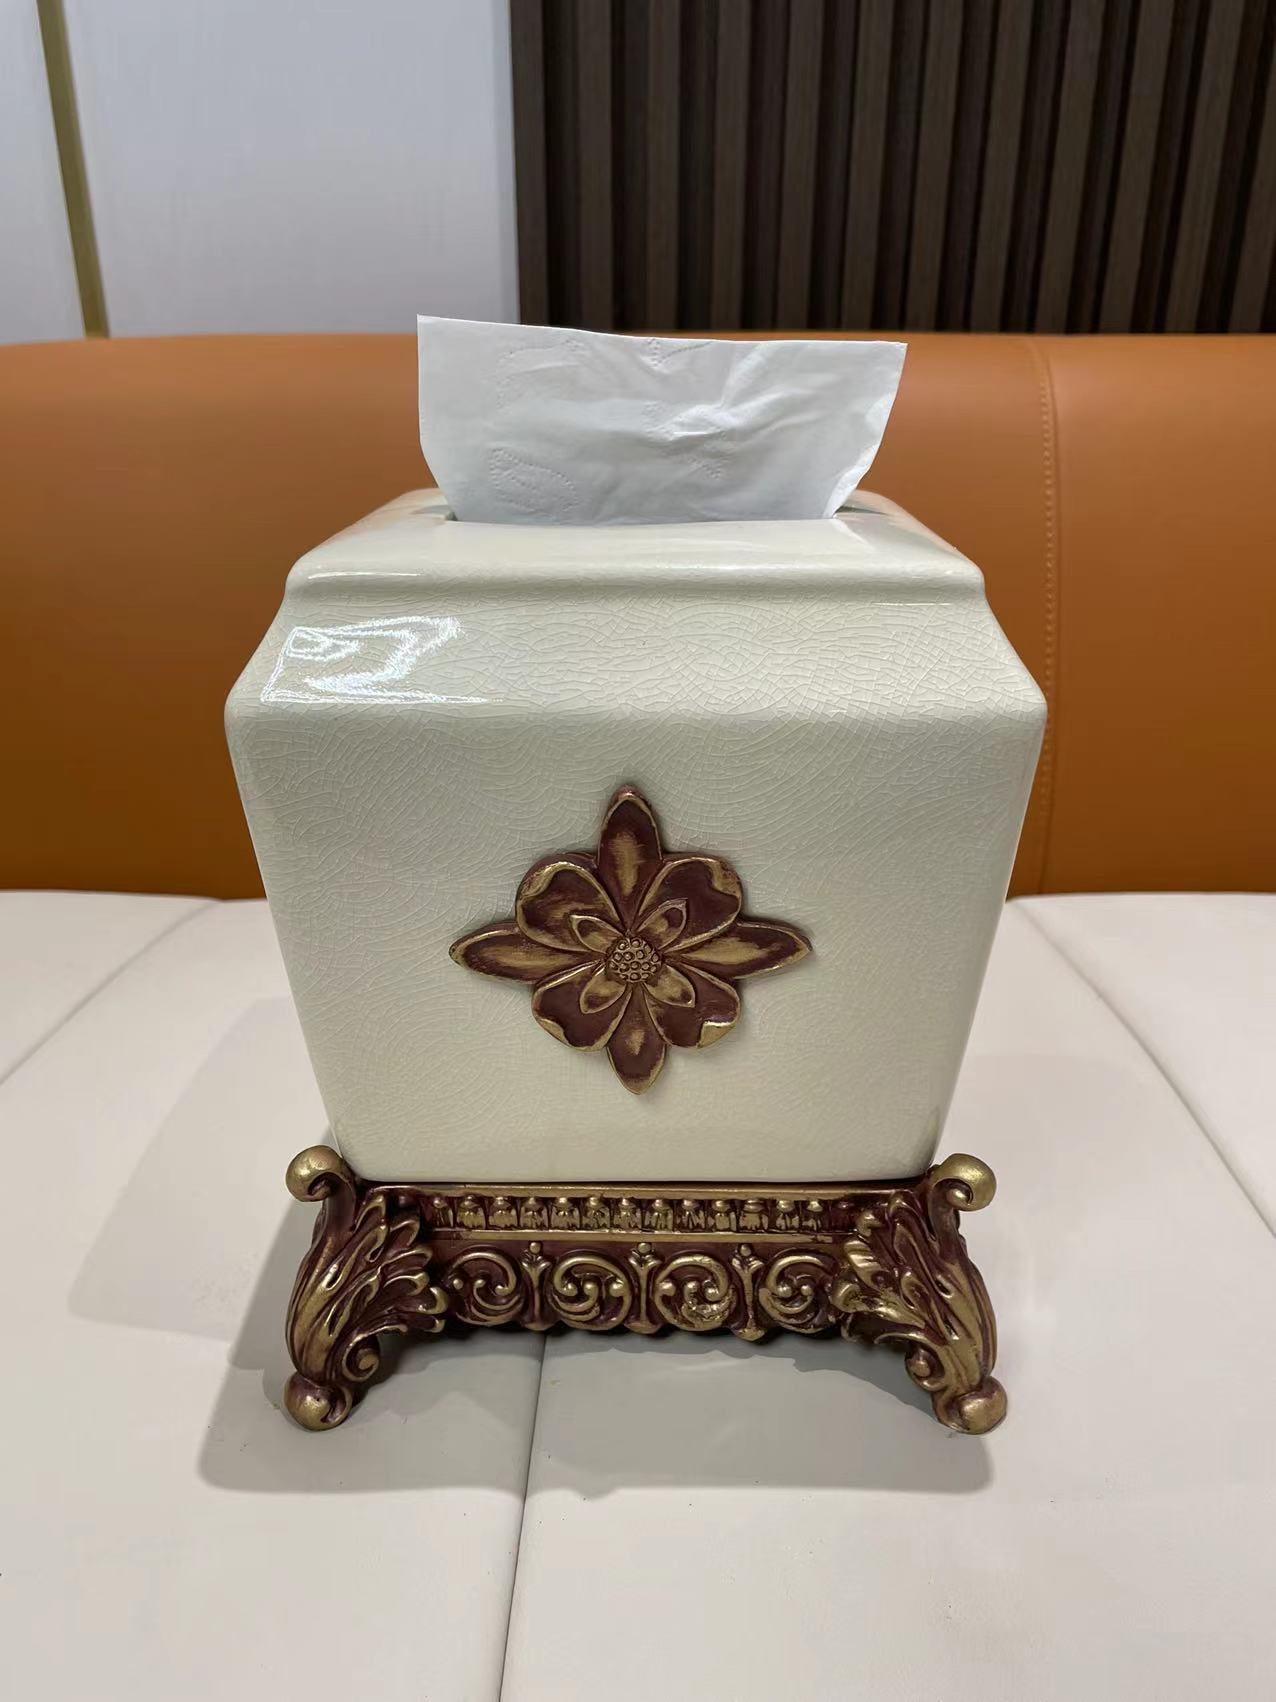 陶瓷紙巾盒 創意家居裝飾 美式風格餐巾盒 抽紙盒 簡約大氣